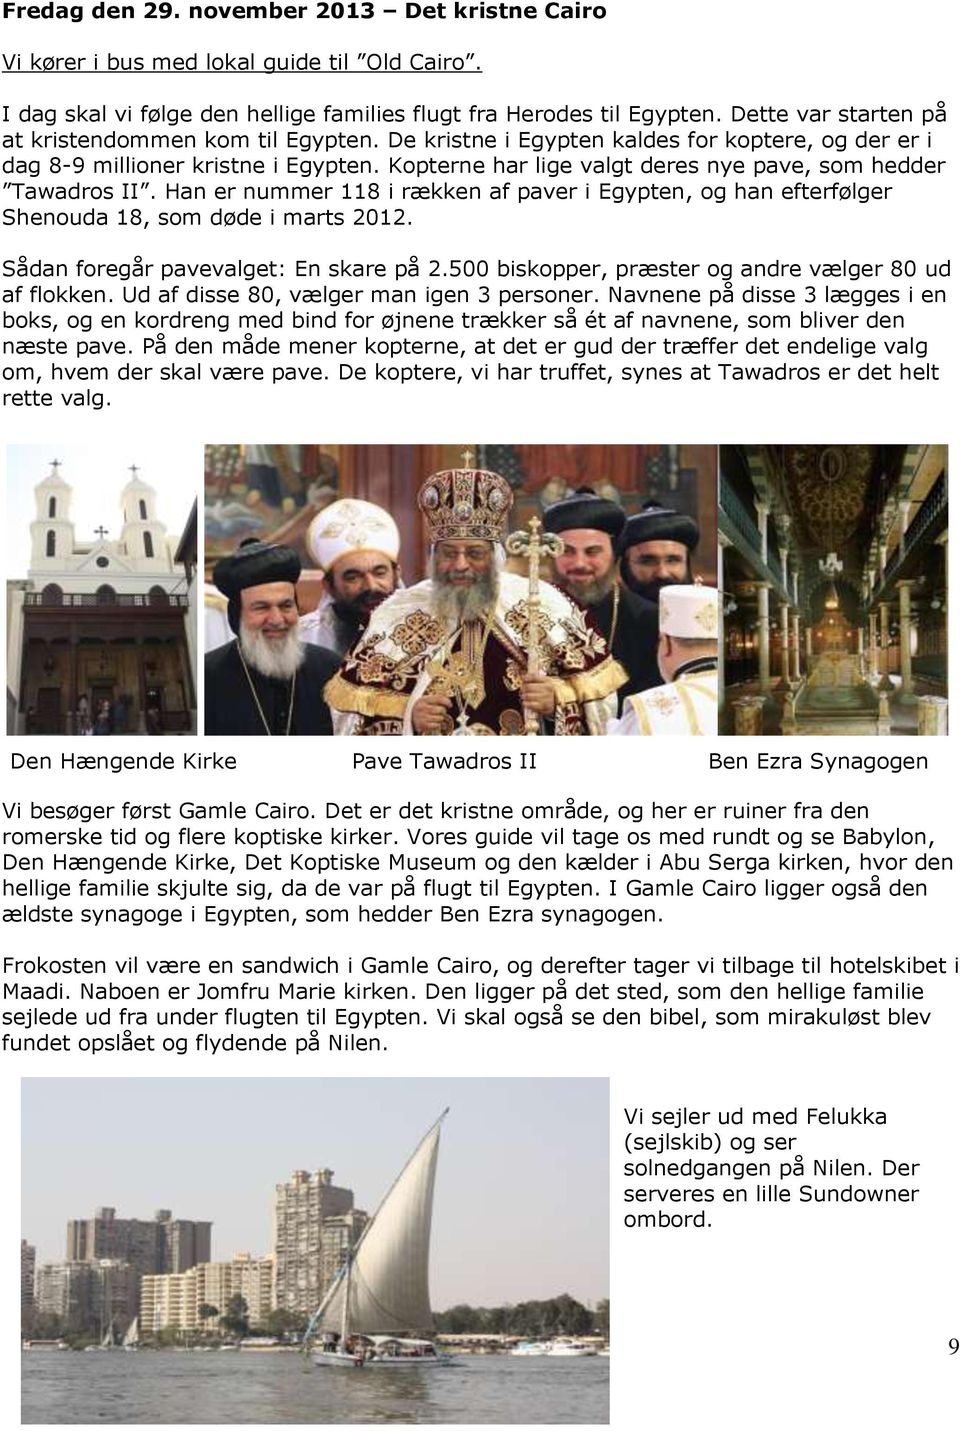 Kopterne har lige valgt deres nye pave, som hedder Tawadros II. Han er nummer 118 i rækken af paver i Egypten, og han efterfølger Shenouda 18, som døde i marts 2012.